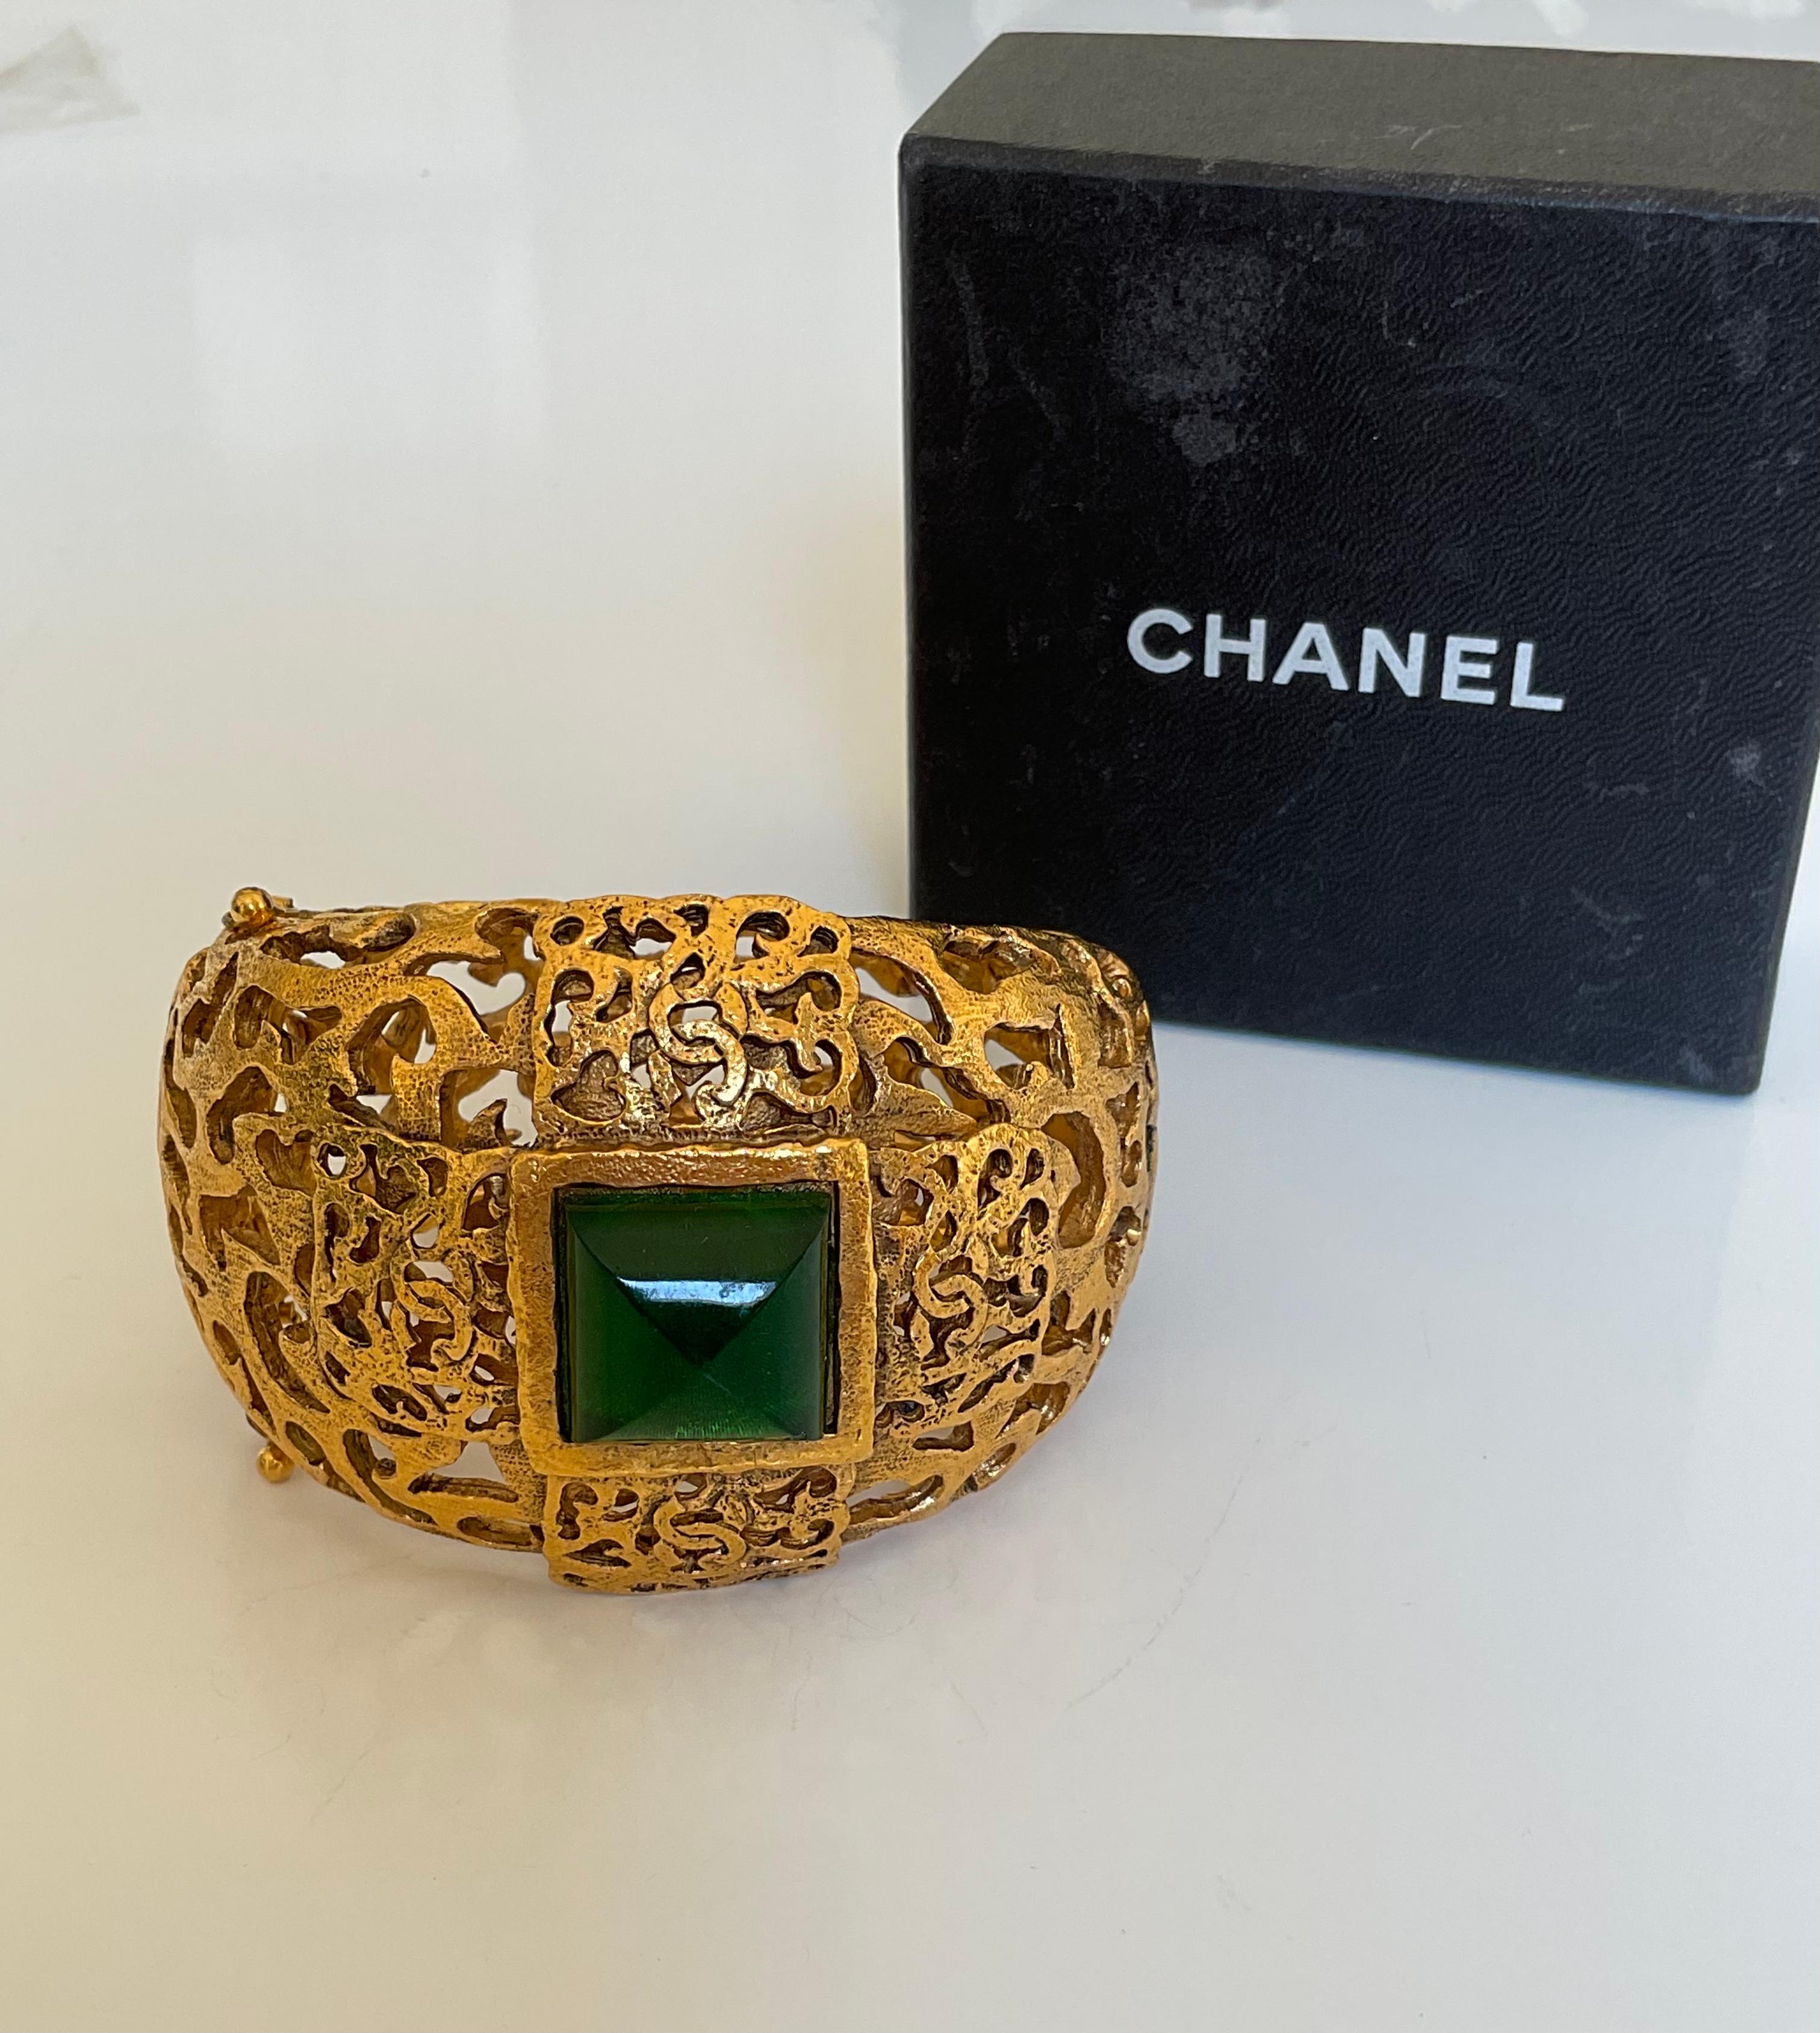 Dieses einzigartige Armband aus den 80er Jahren präsentiert einen großen grünen Stein in der Mitte, der aus Pate de Verre